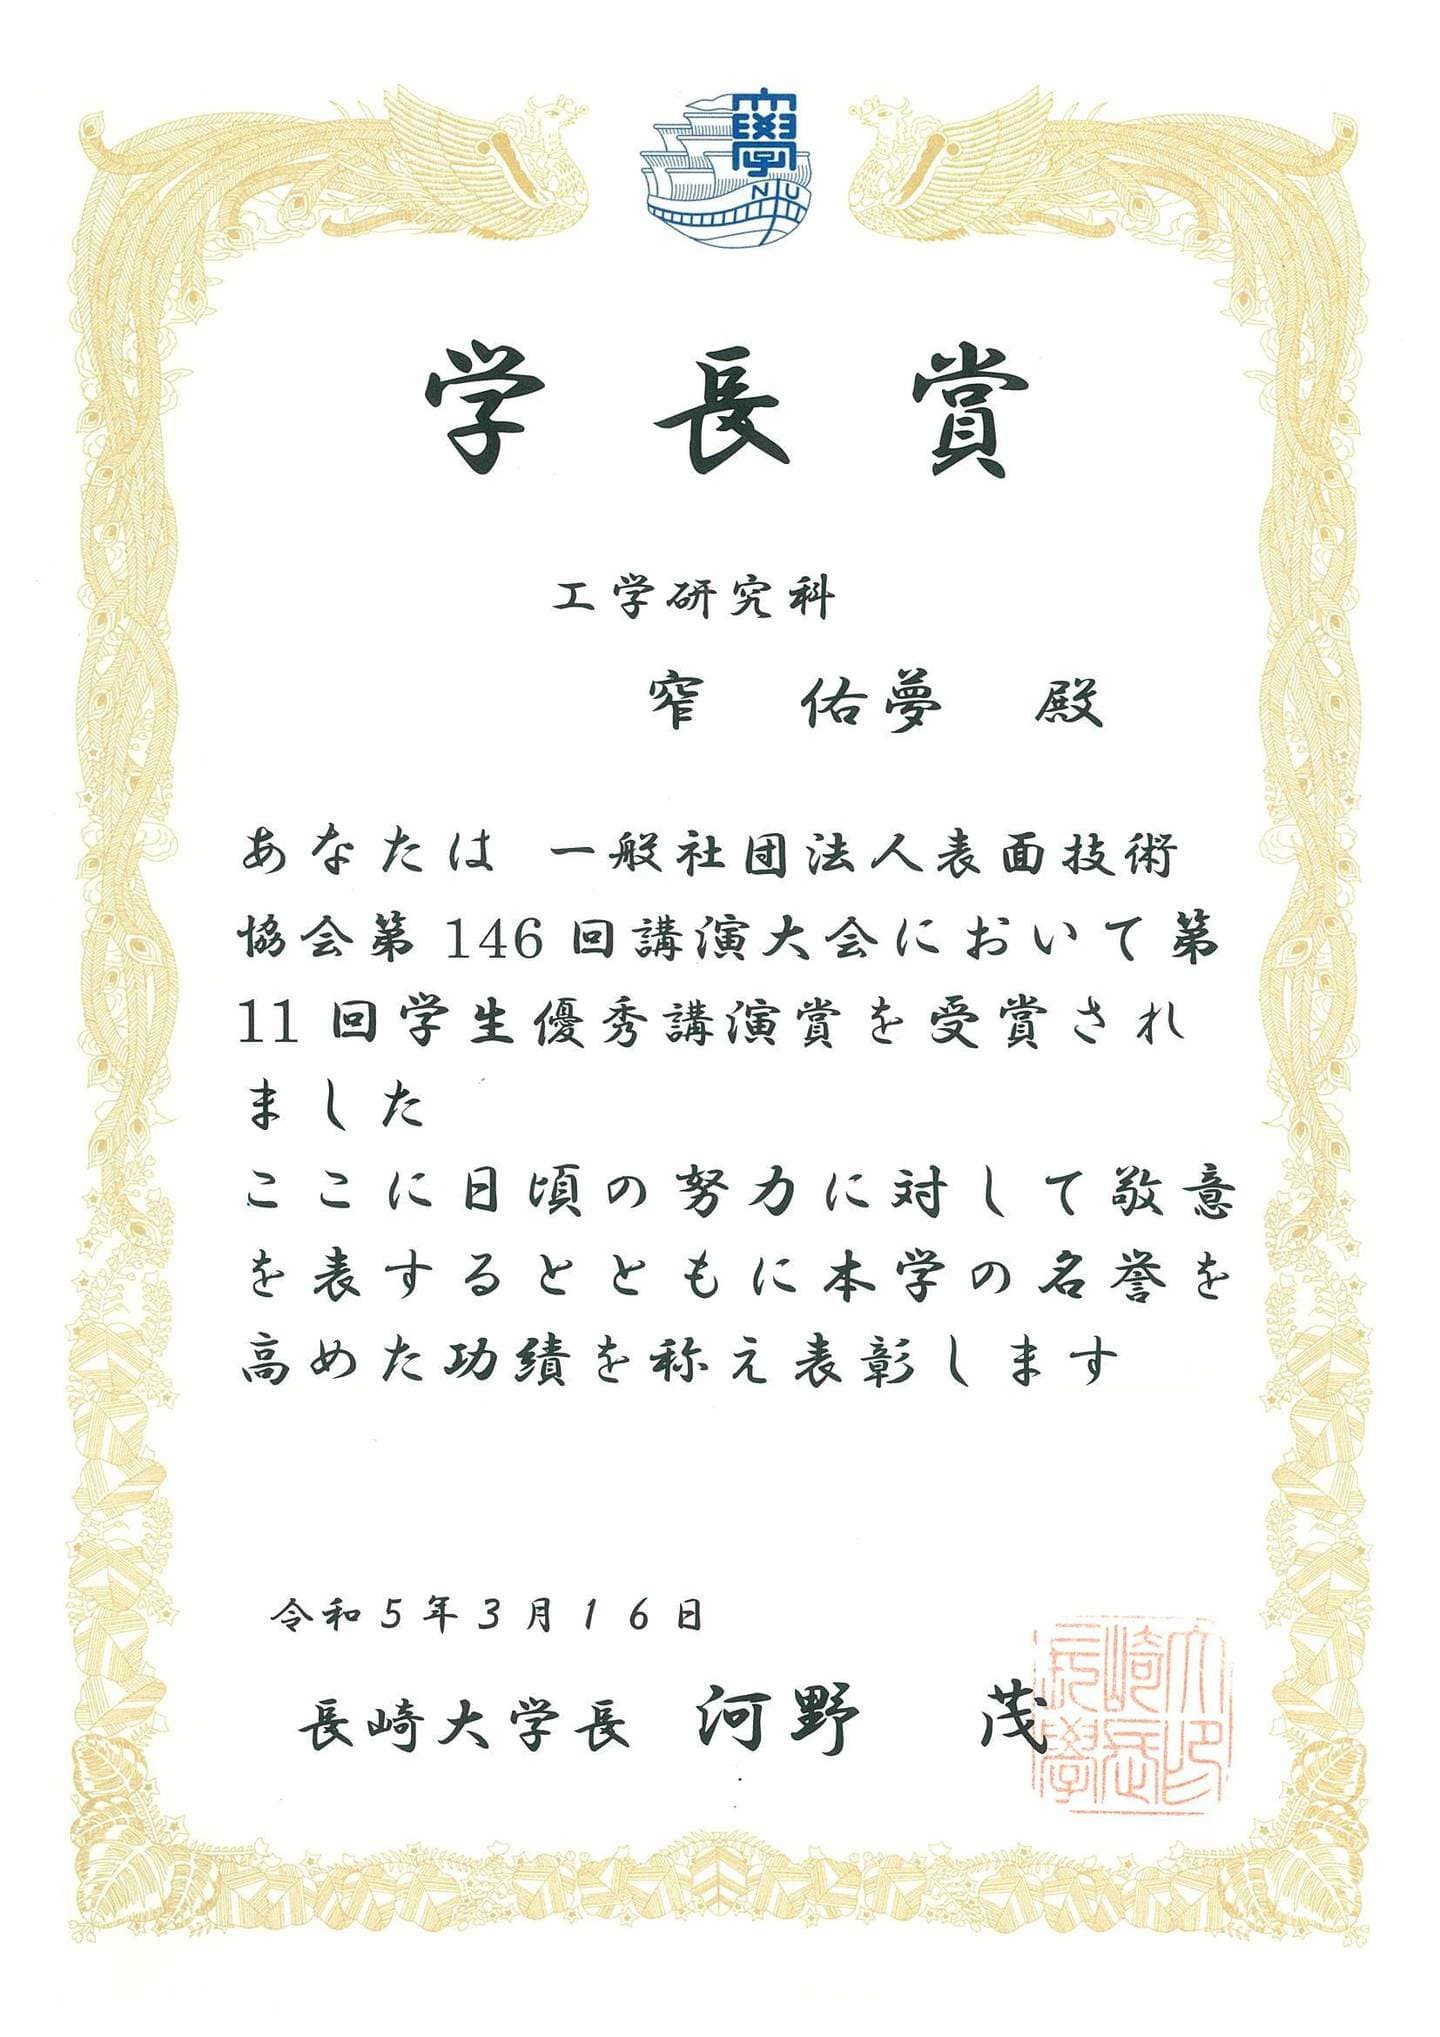 窄佑夢君(M1)が、学長賞(学術研究分野)を受賞しました。2023/03/16